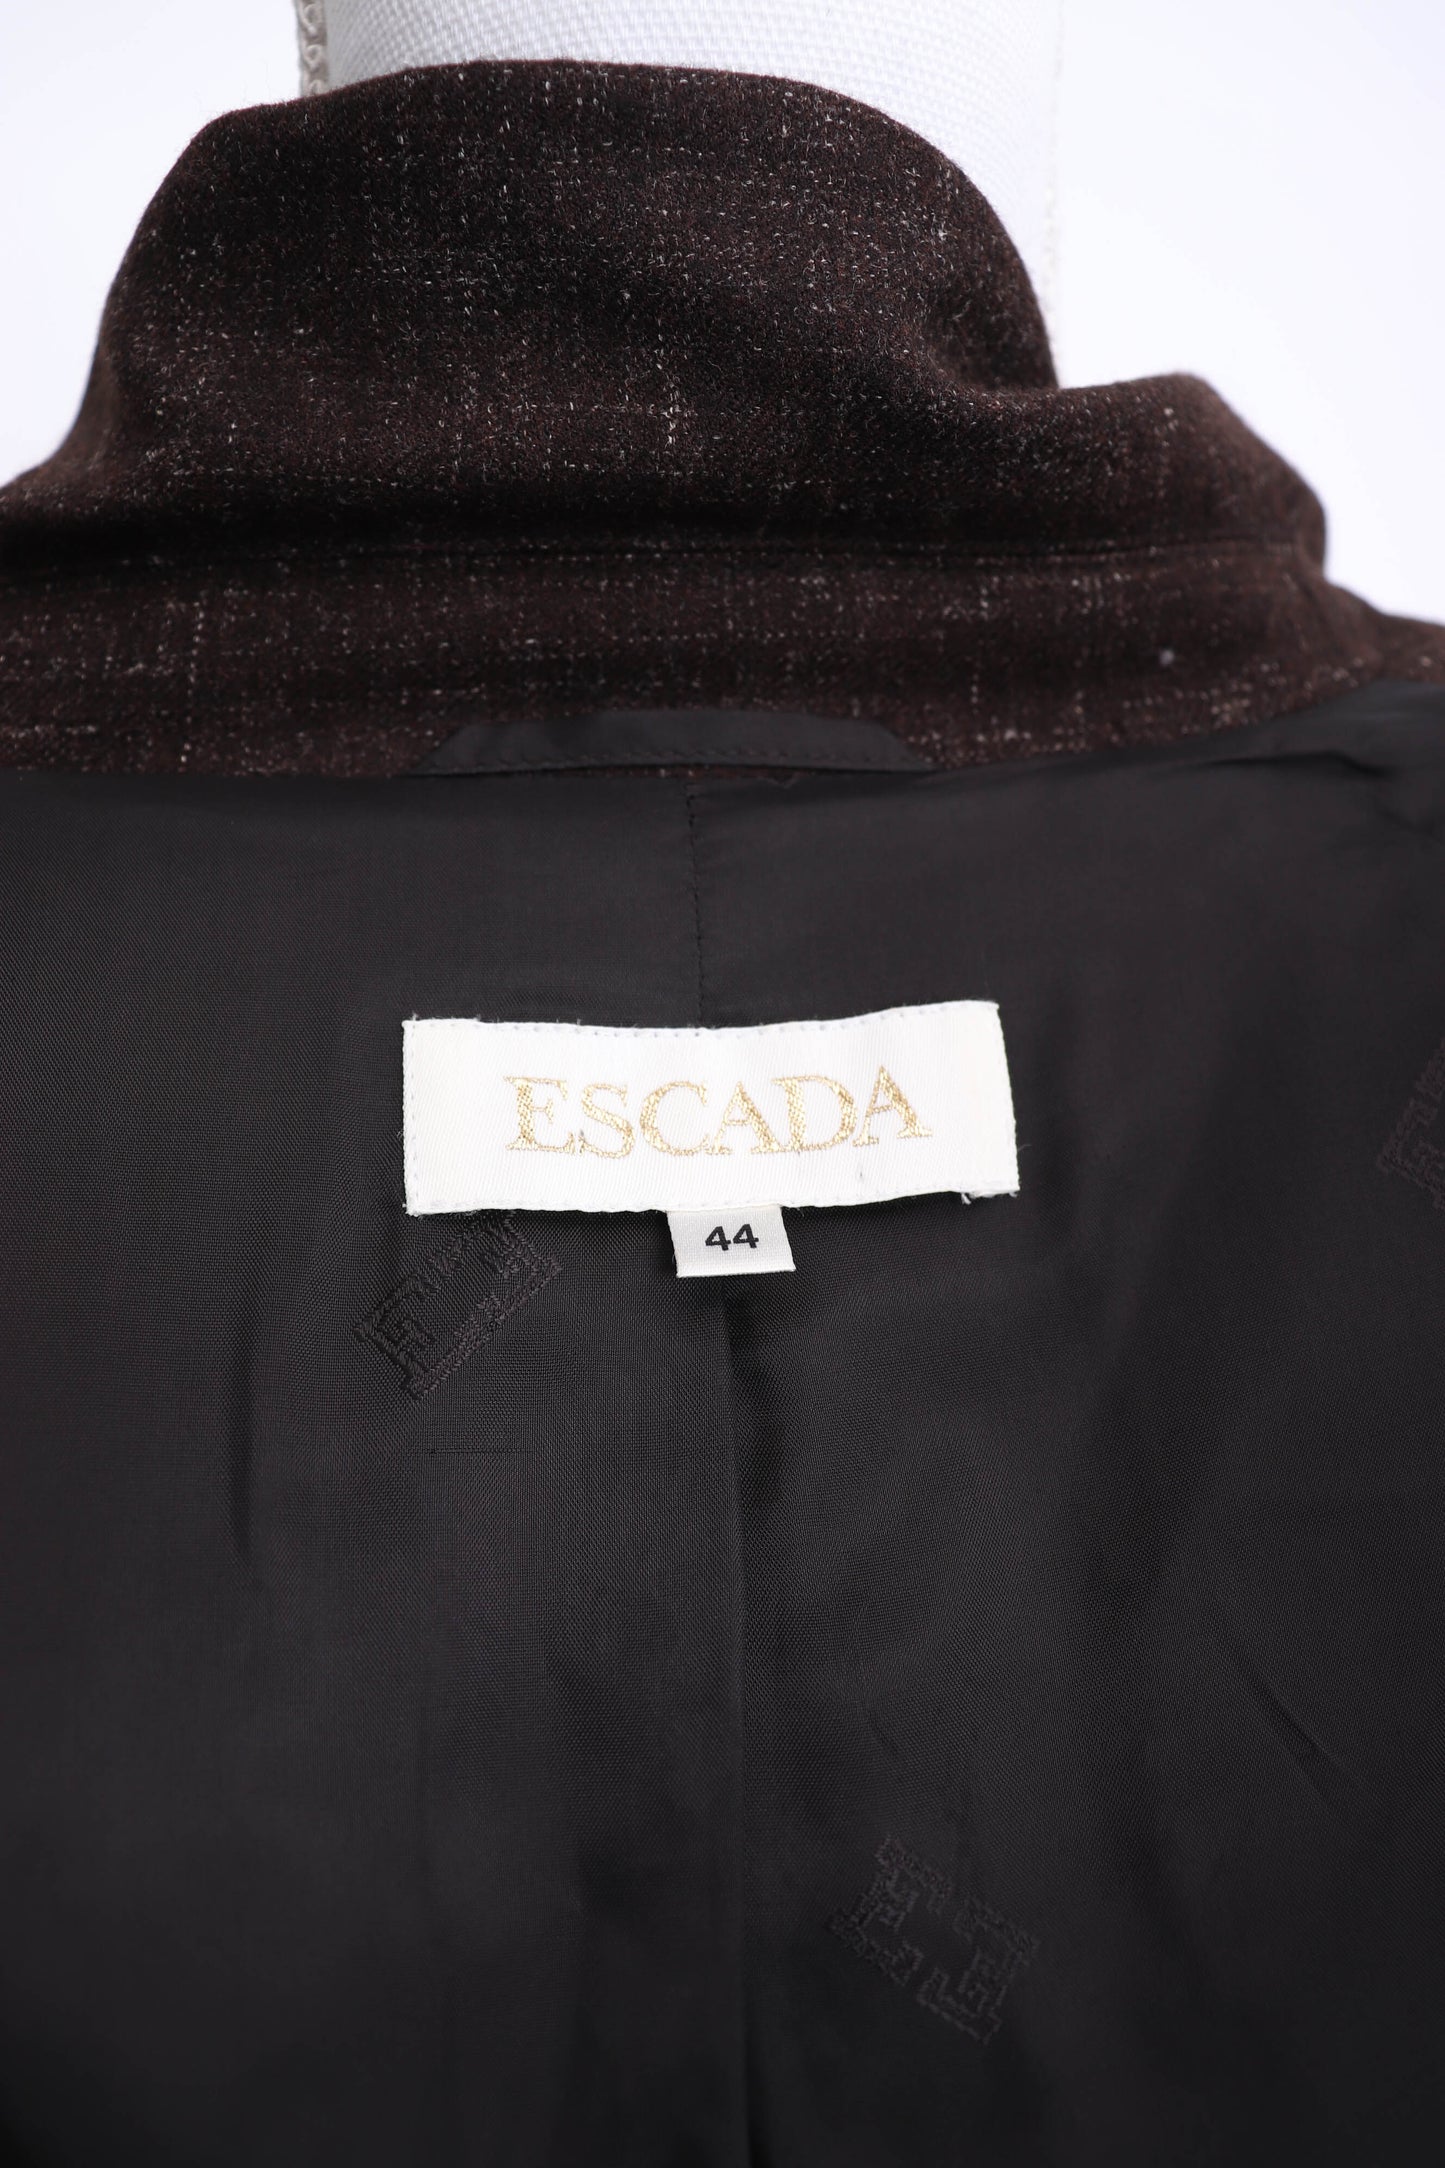 90's Escada Brown Wool Blazer L/XL